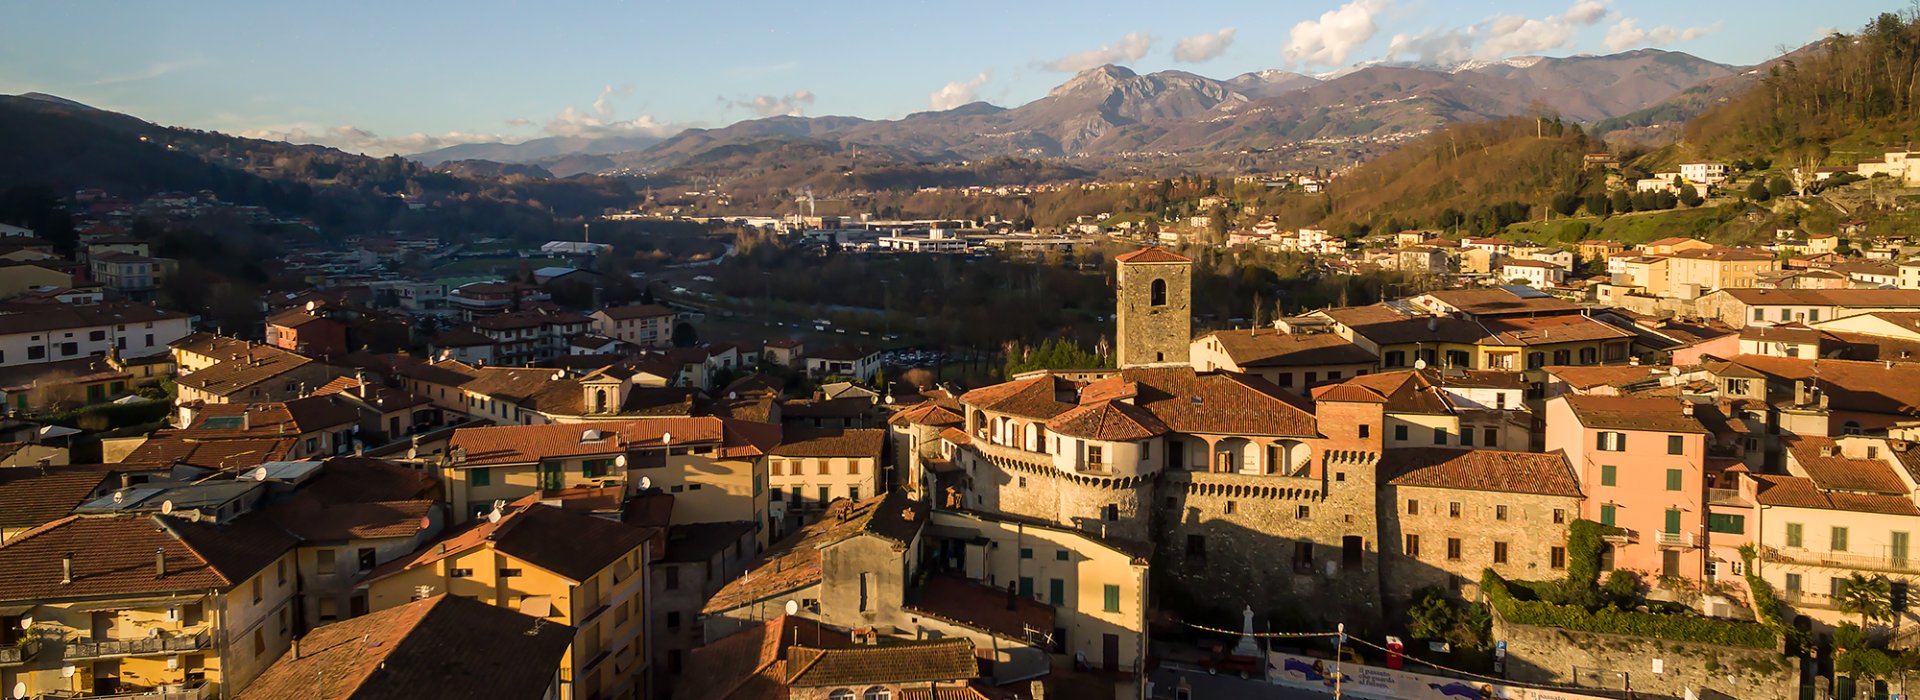 La cittadina di Castelnuovo Garfagnana con il suo castello medievale